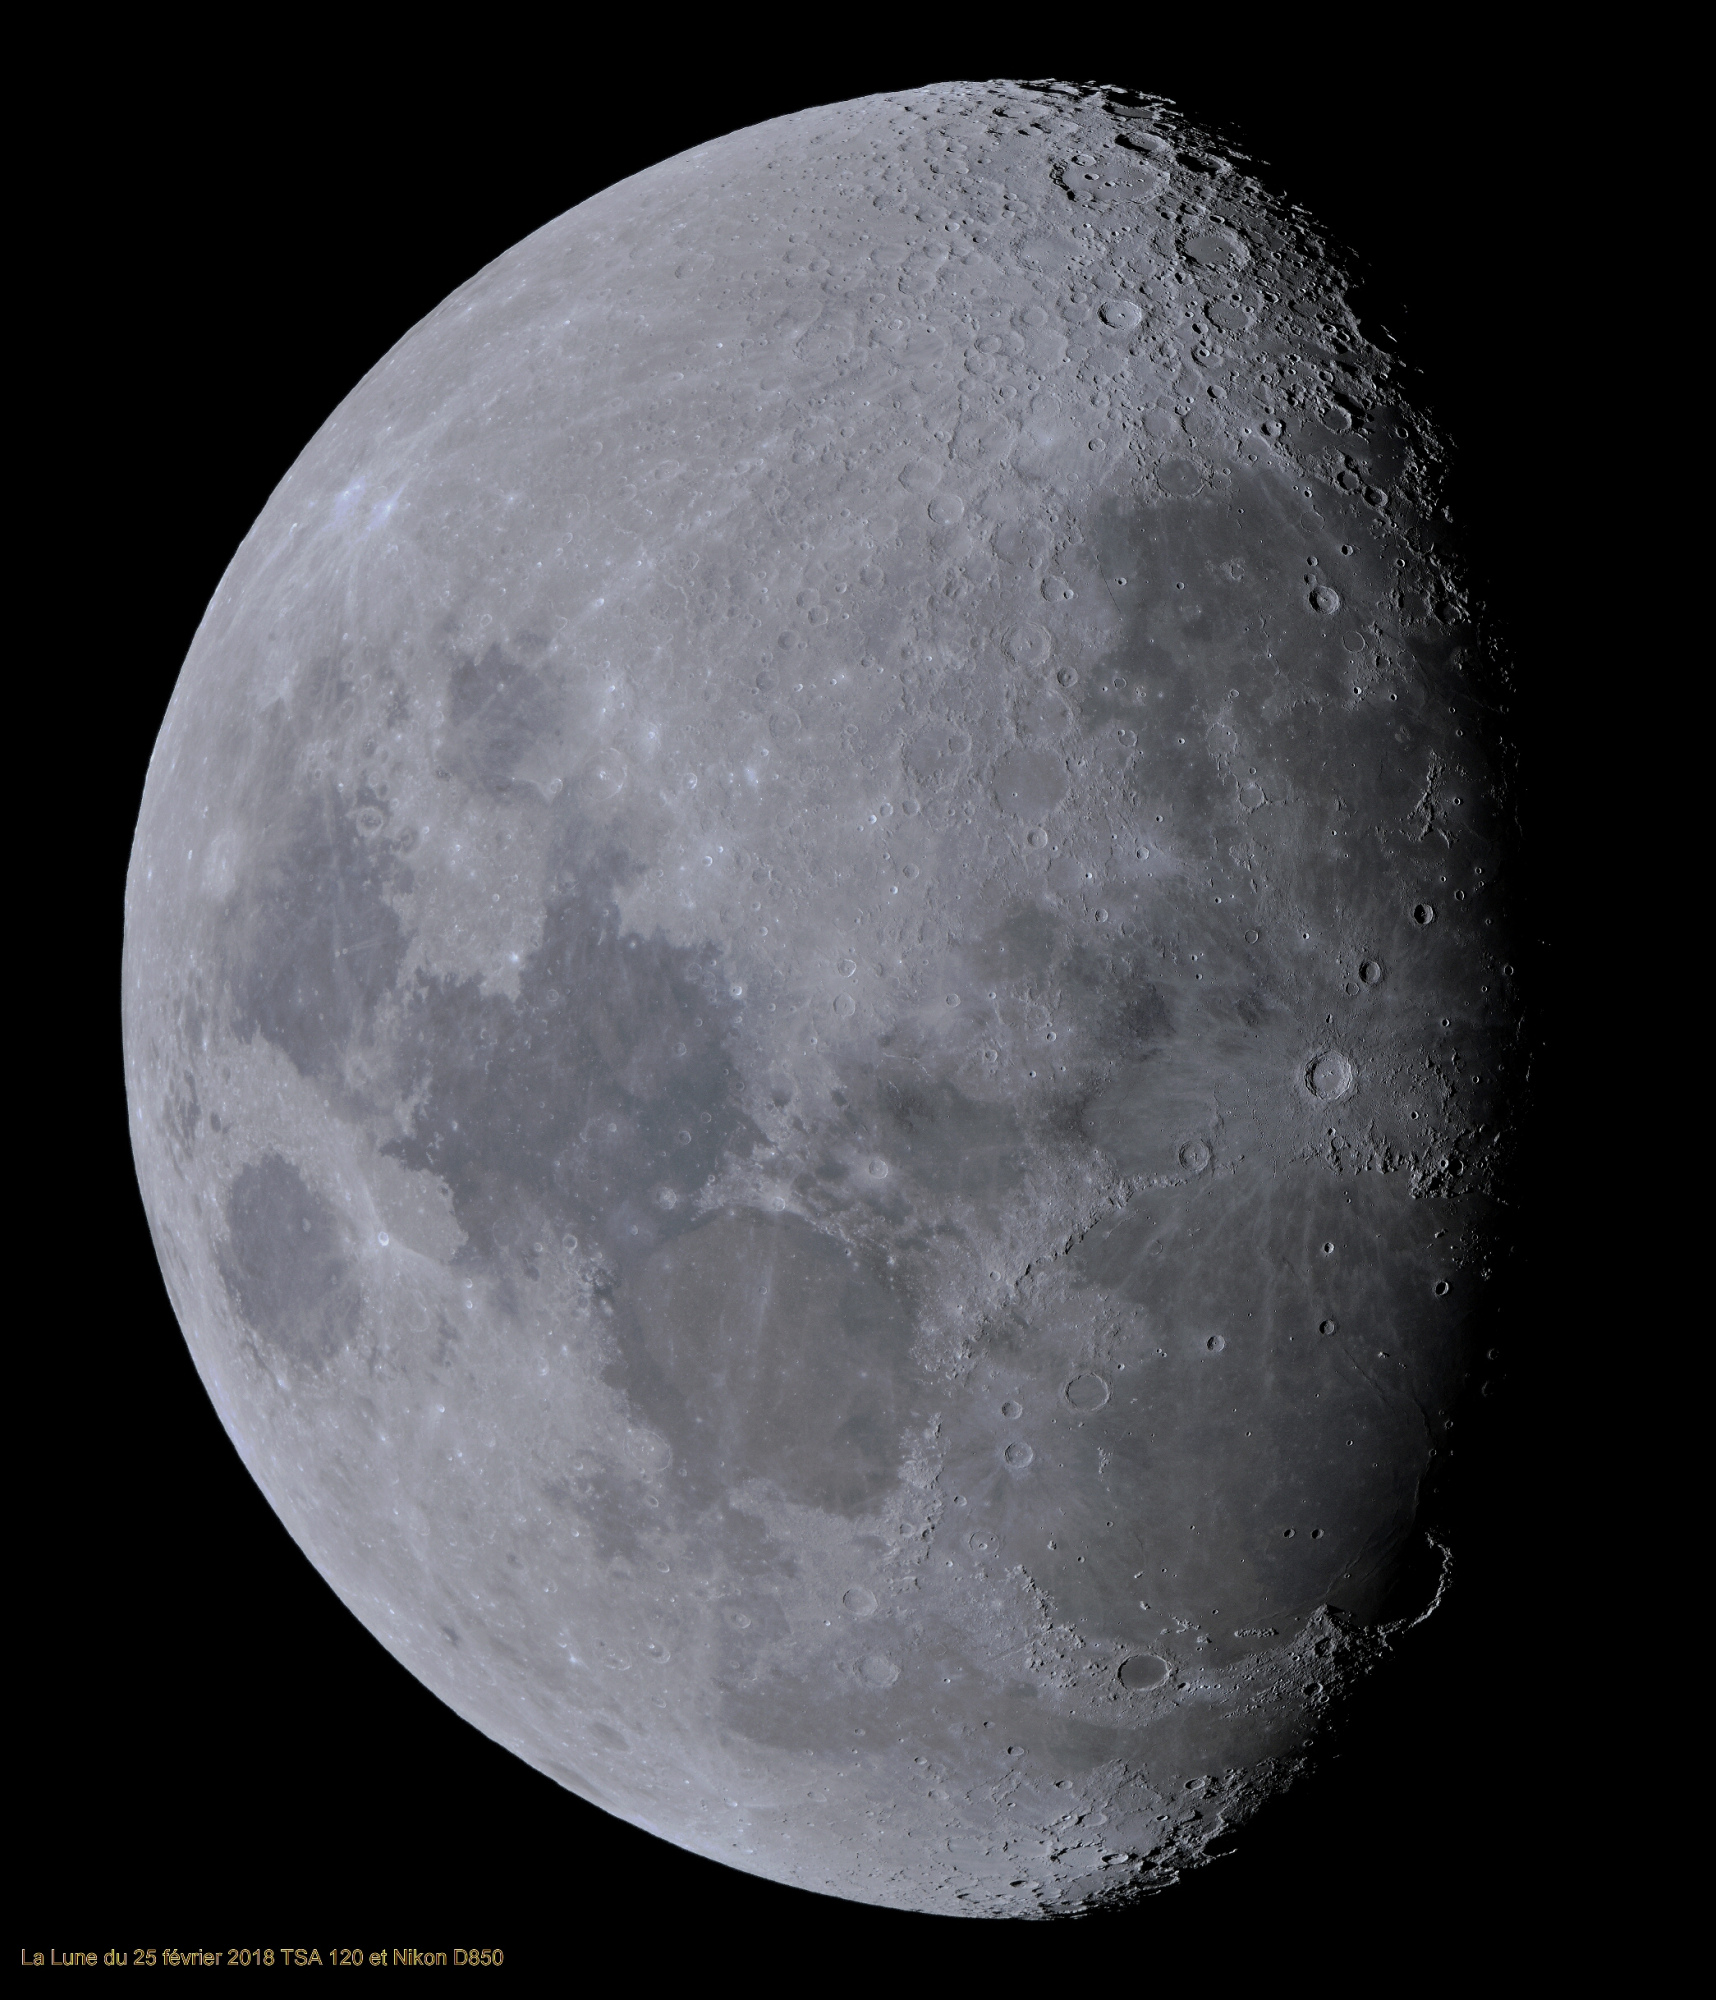 La Lune 27 image MF et Vancittert 25.02.18 BV  40%.jpg